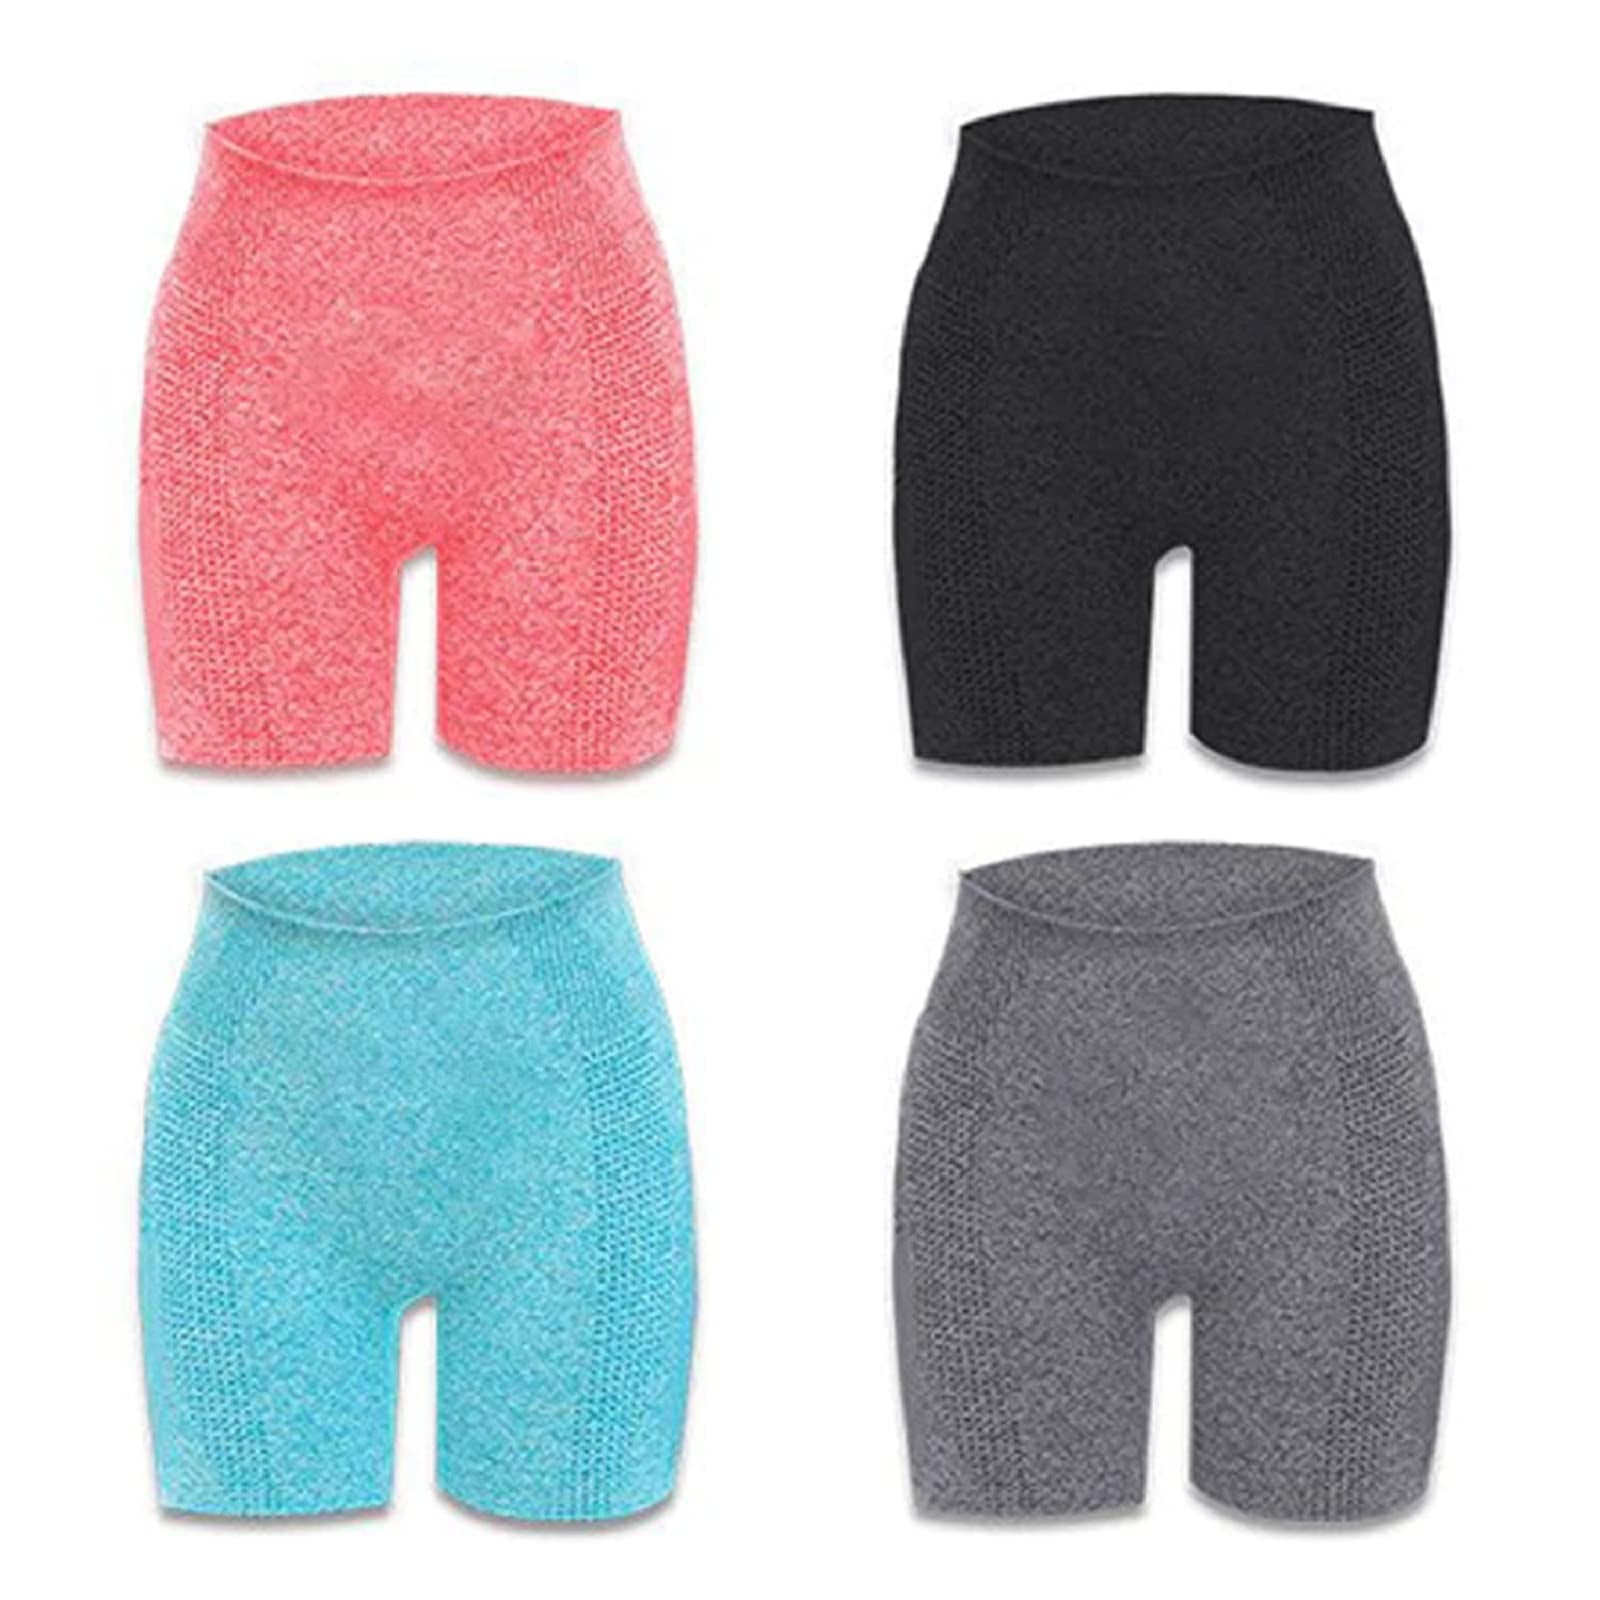 TSAIMEILI Shapermov Ion Shaping Shorts, Comfort Breathable Fabric Get ...